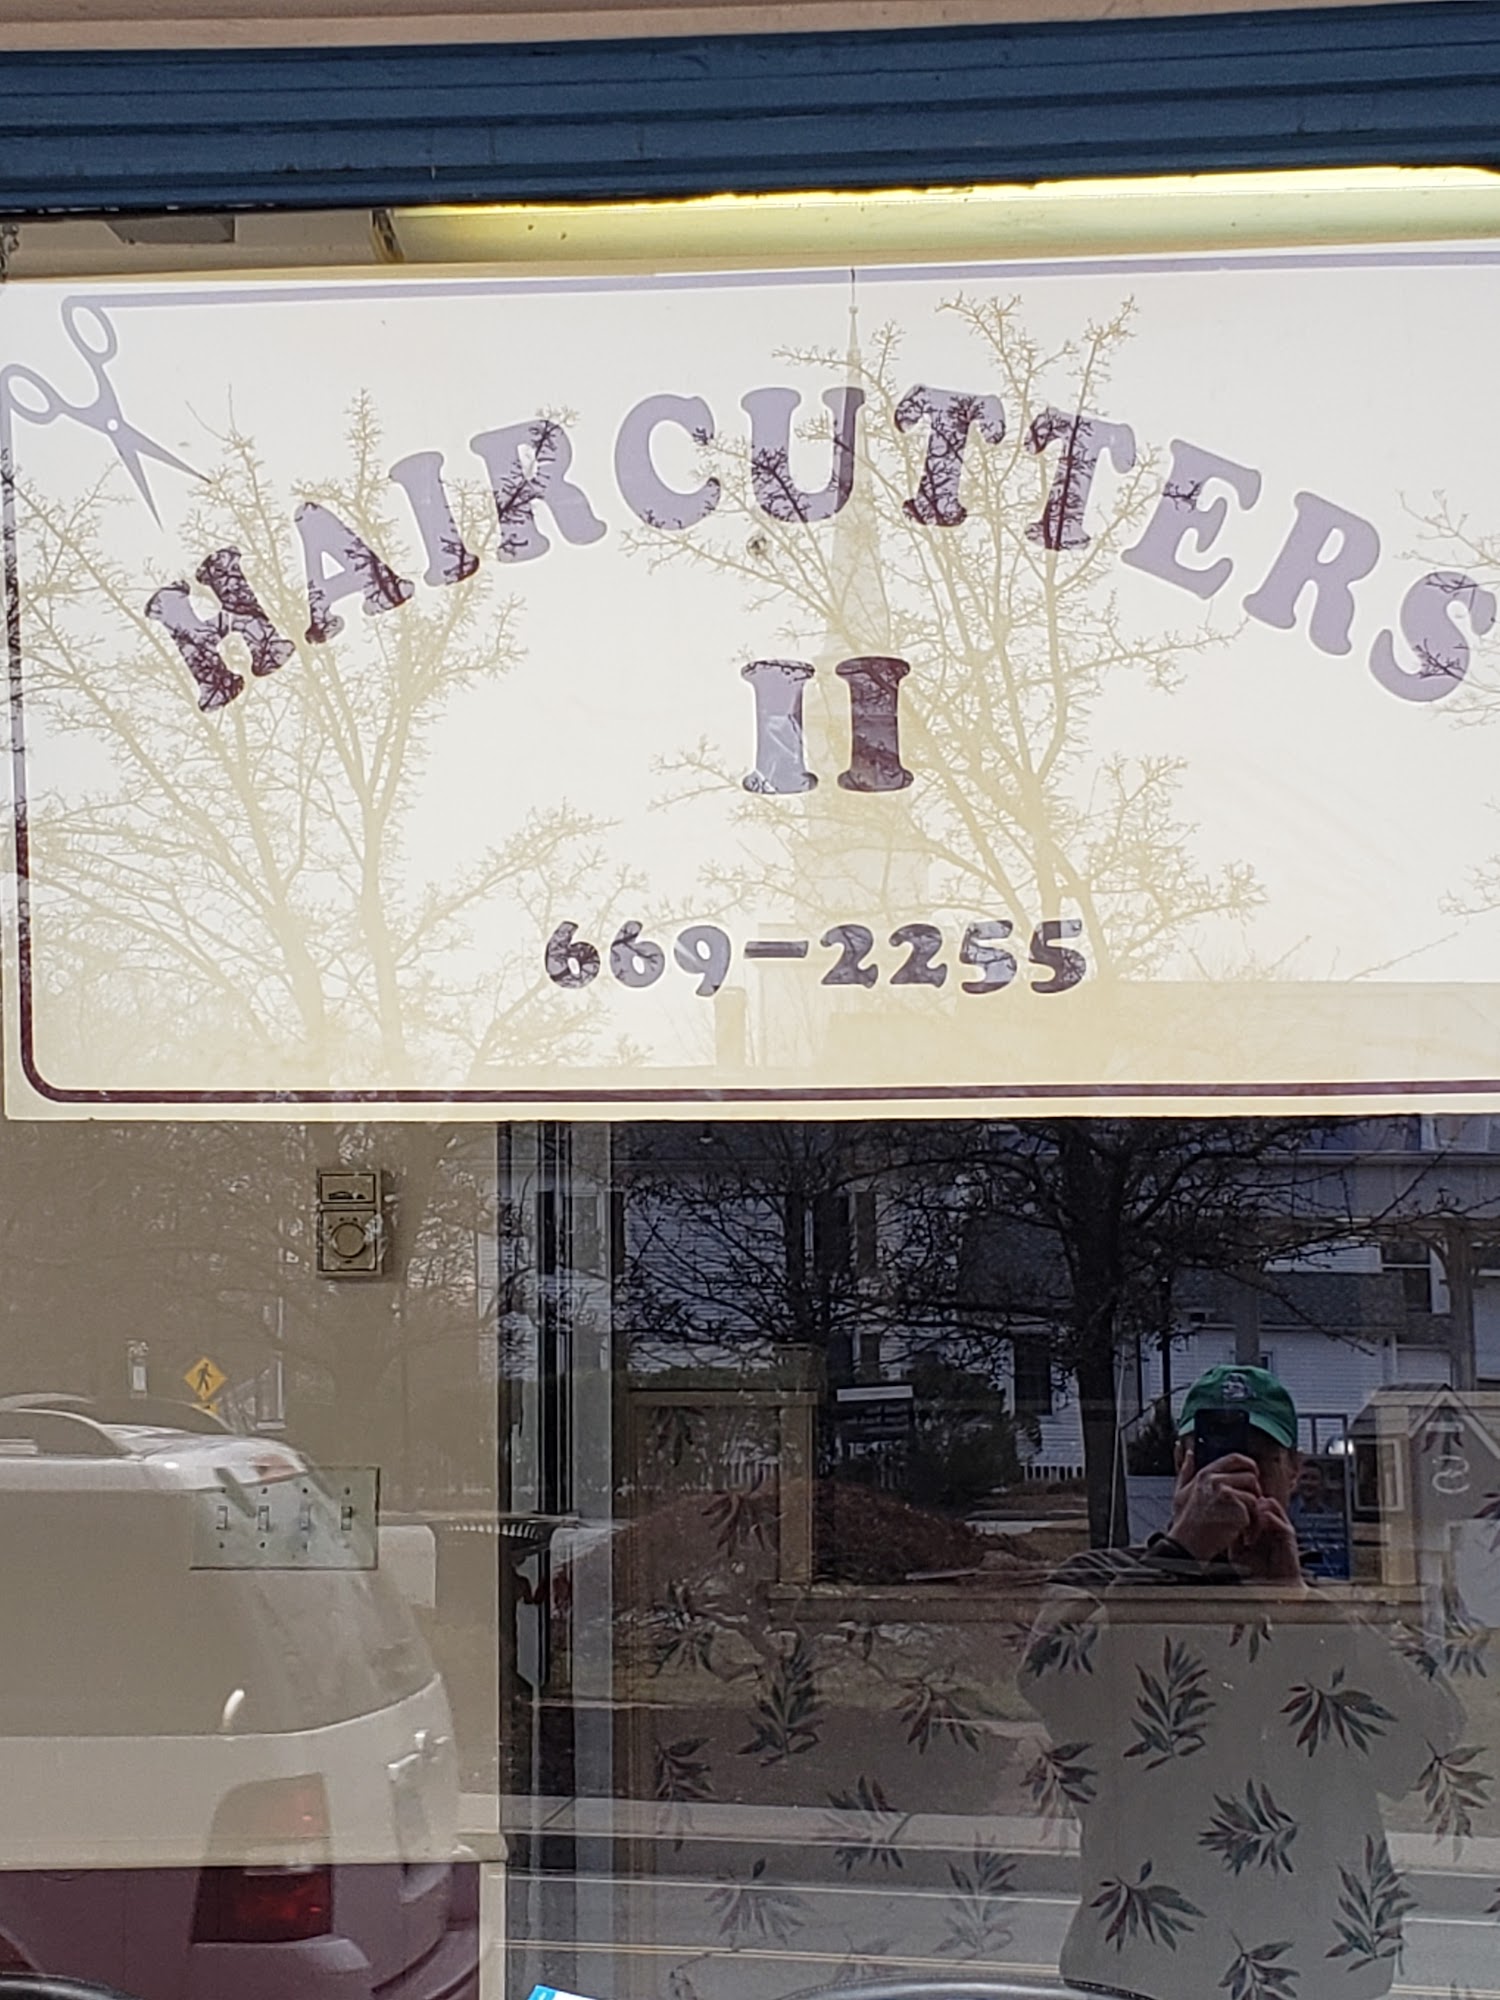 Haircutters II